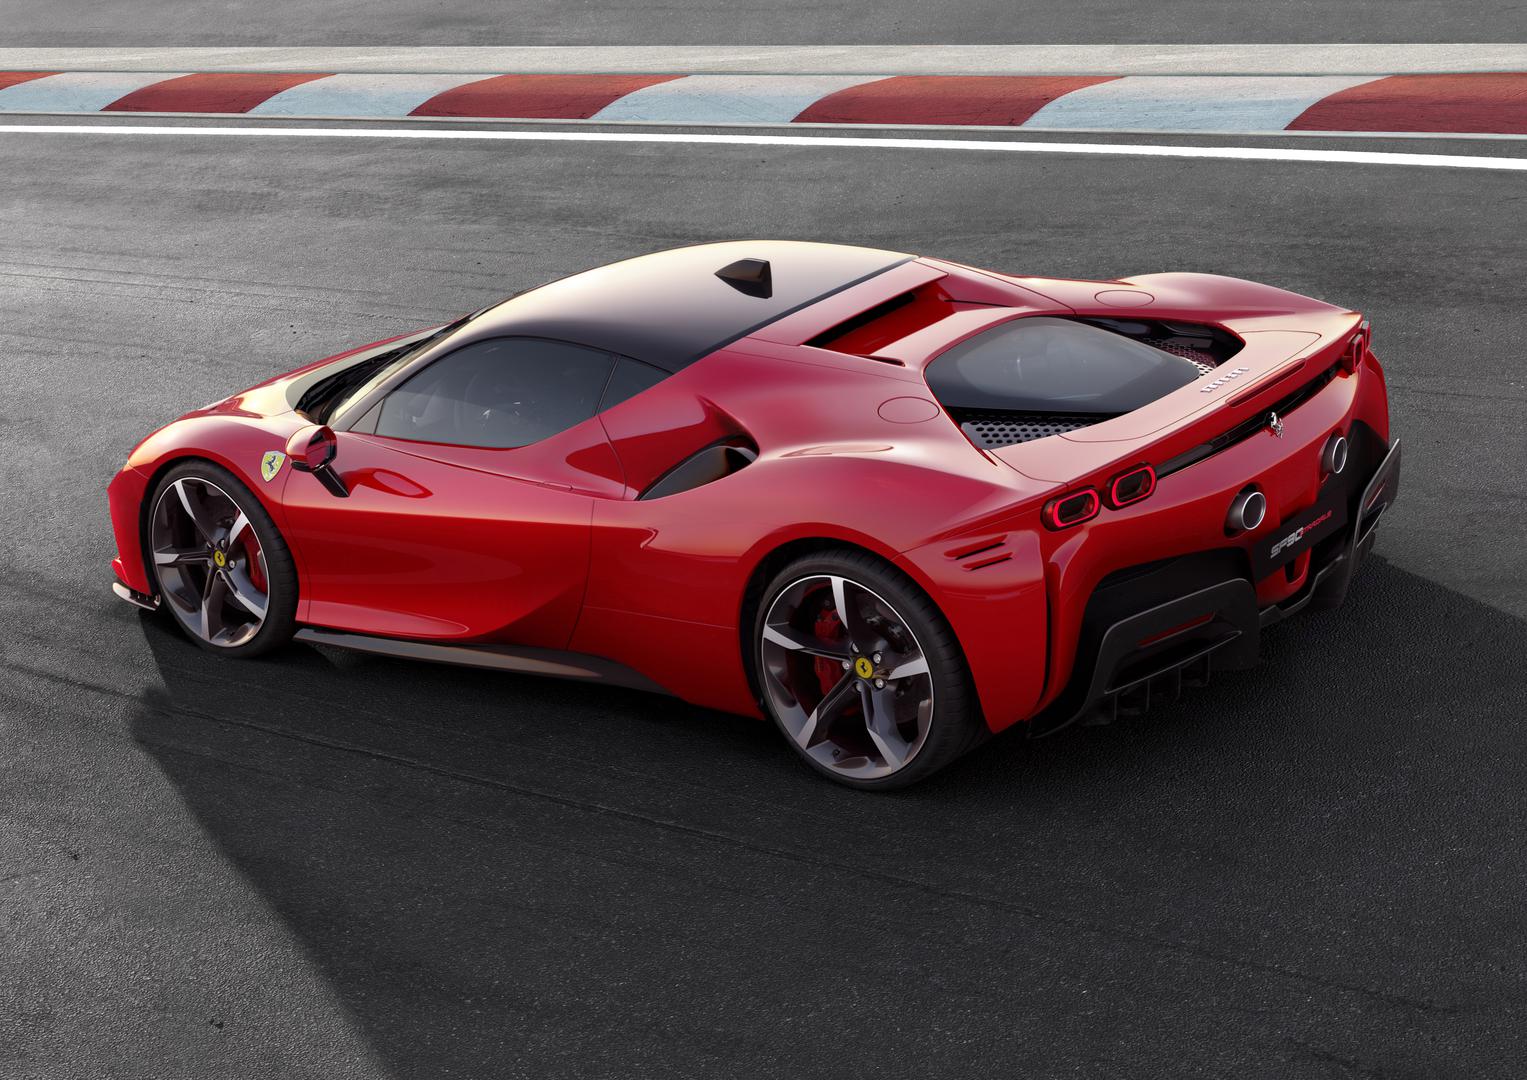 Isporučuje performanse nezamislive za neki serijski automobil. Ako je uopće primjereno takav Ferrari nazivati serijskim...